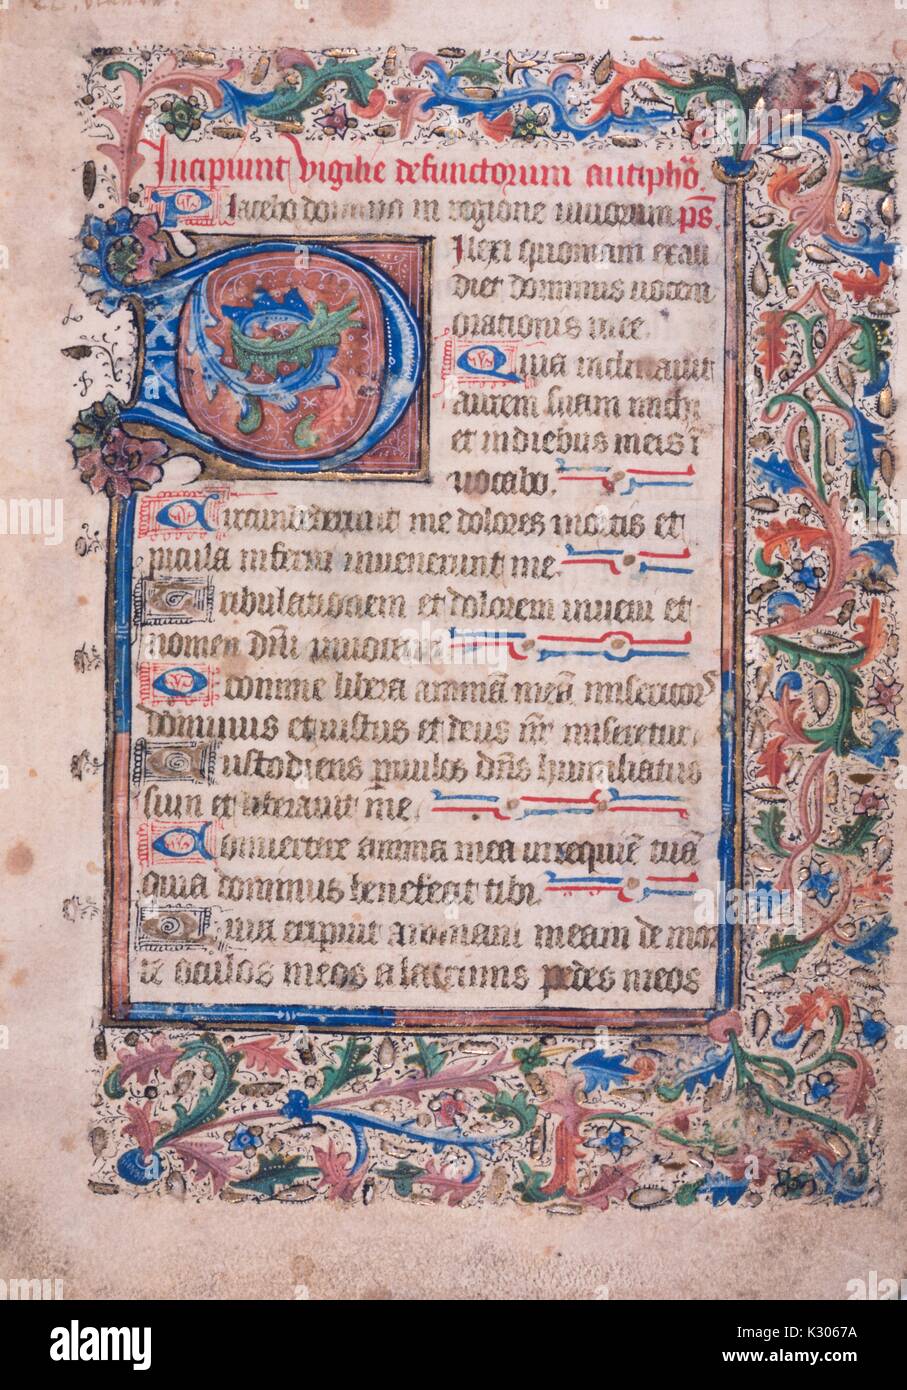 Illuminated manuscript page from 'Incipiunt vigilie defunctorum, ' printed in Latin in 15th century, 1400. Stock Photo